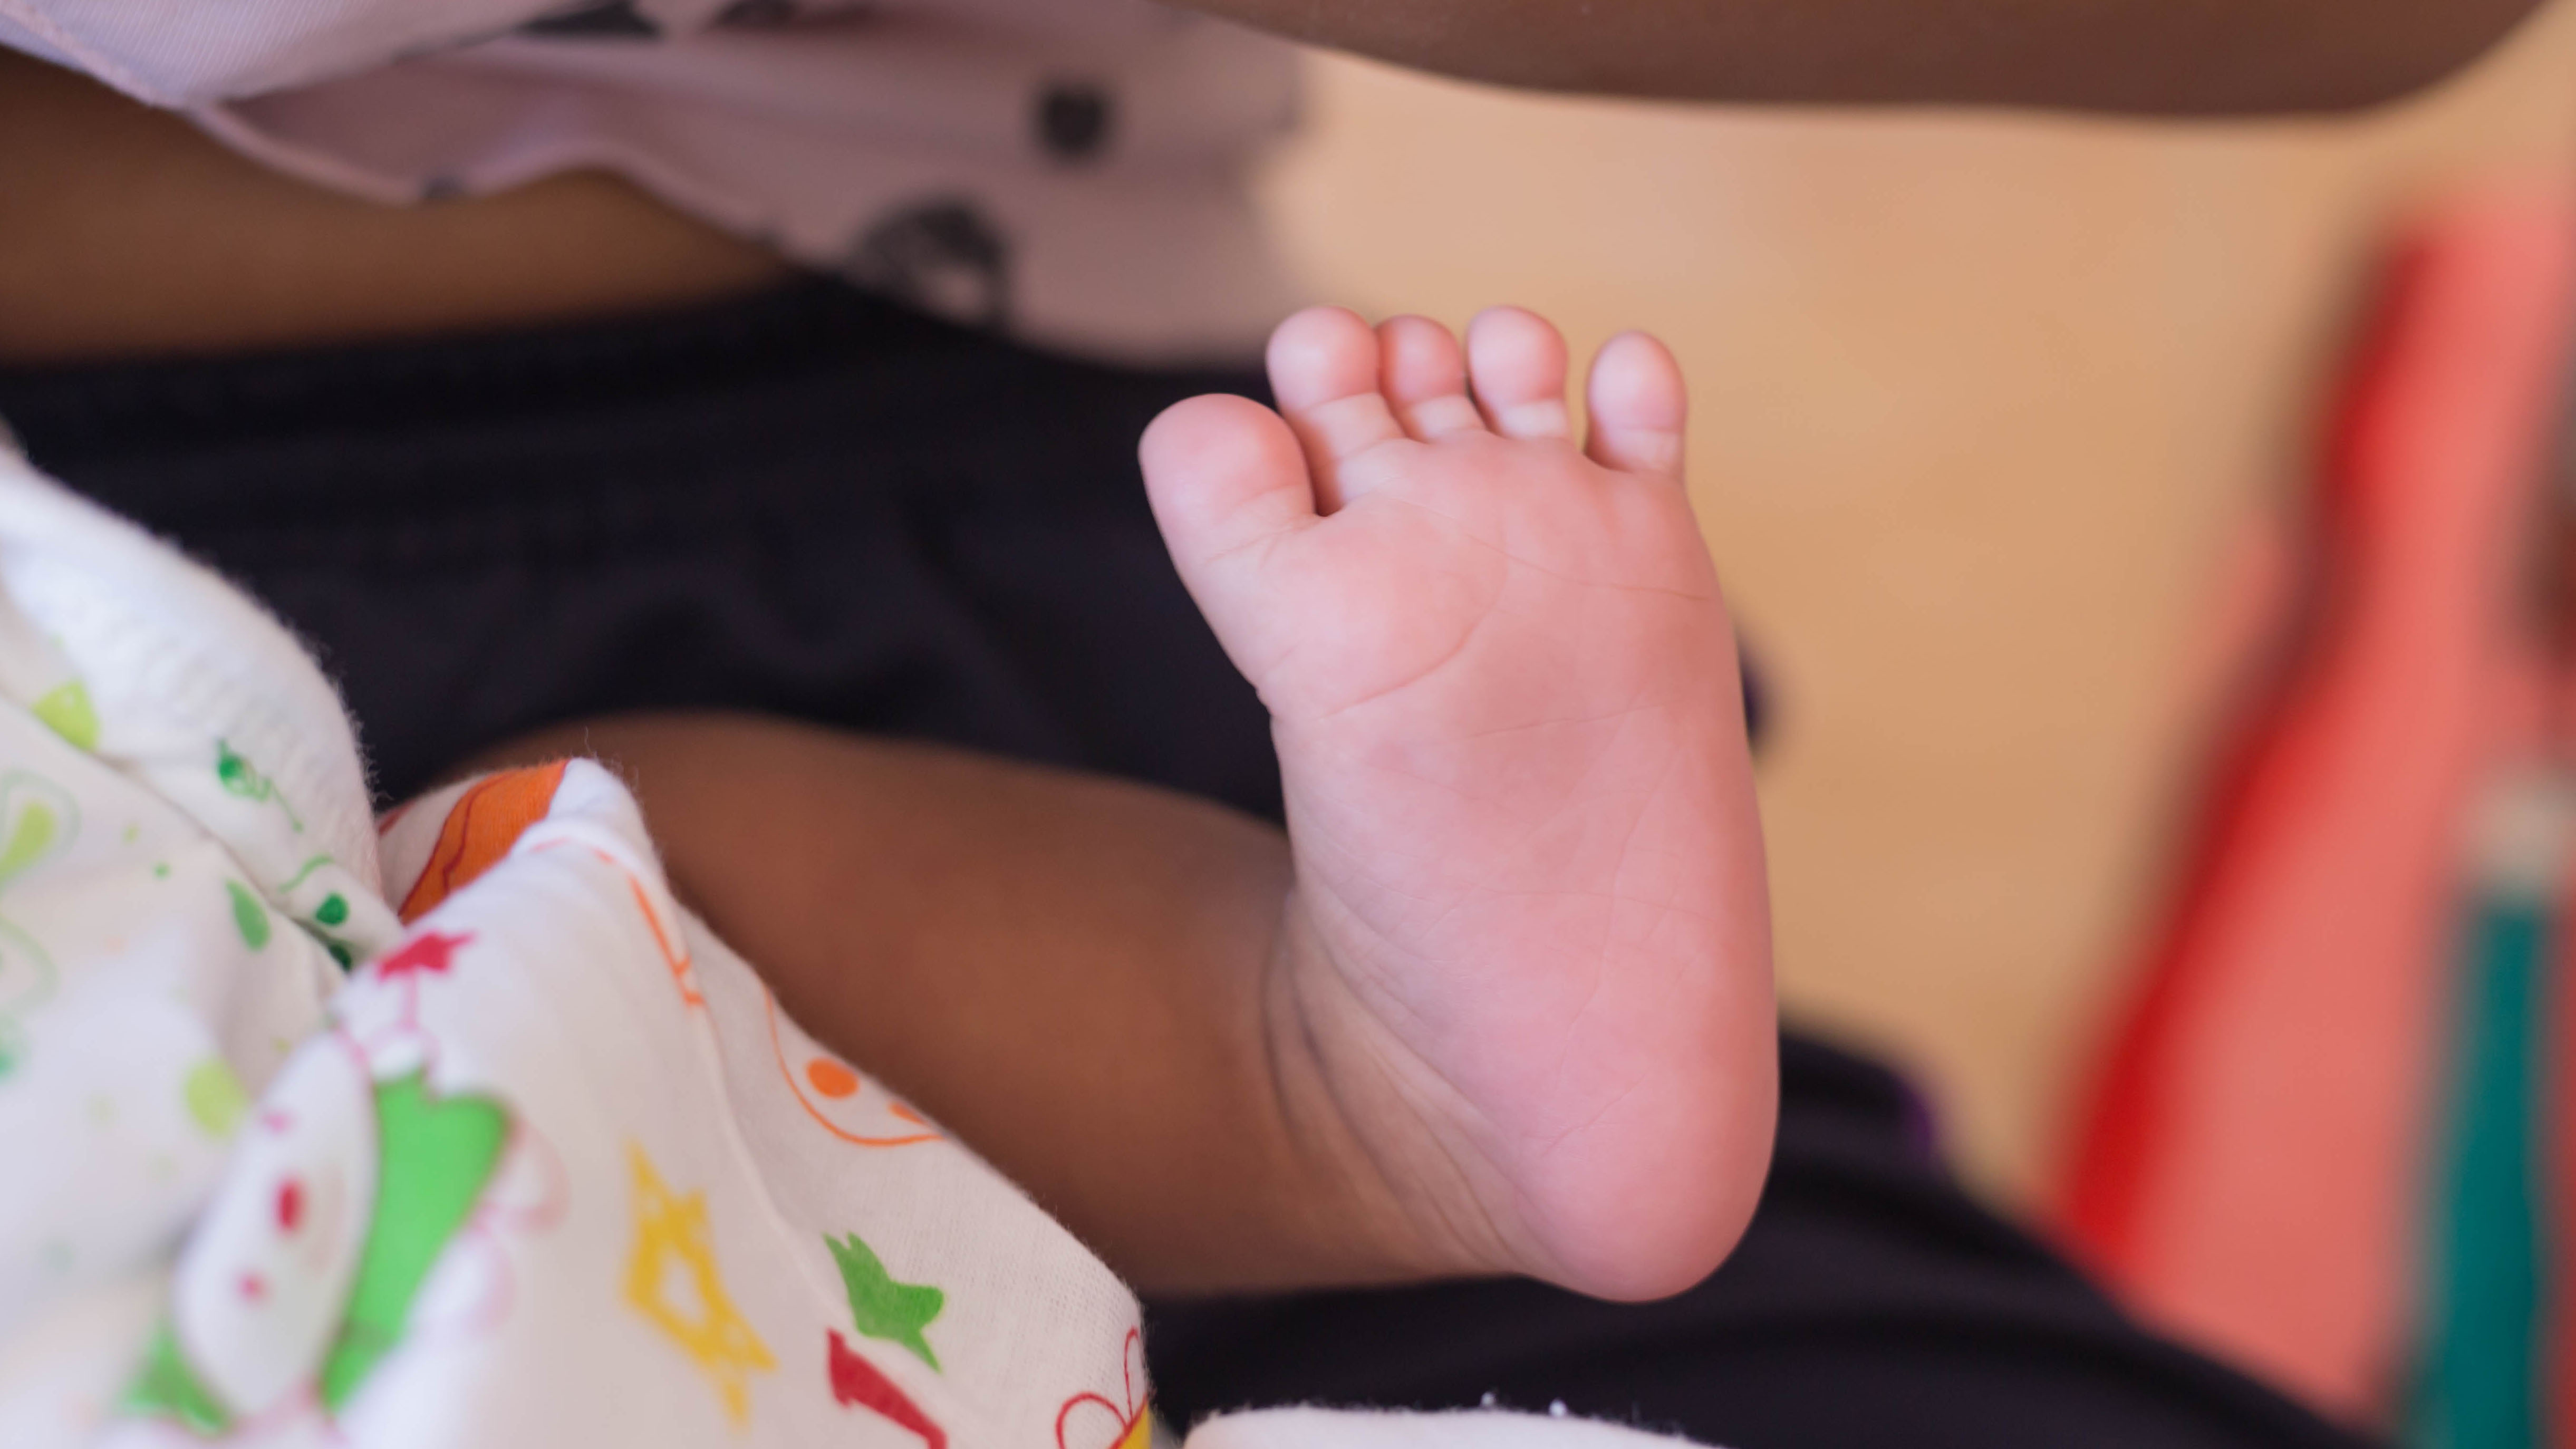     En Martinique, environ 250 bébés naissent prématurément chaque année

